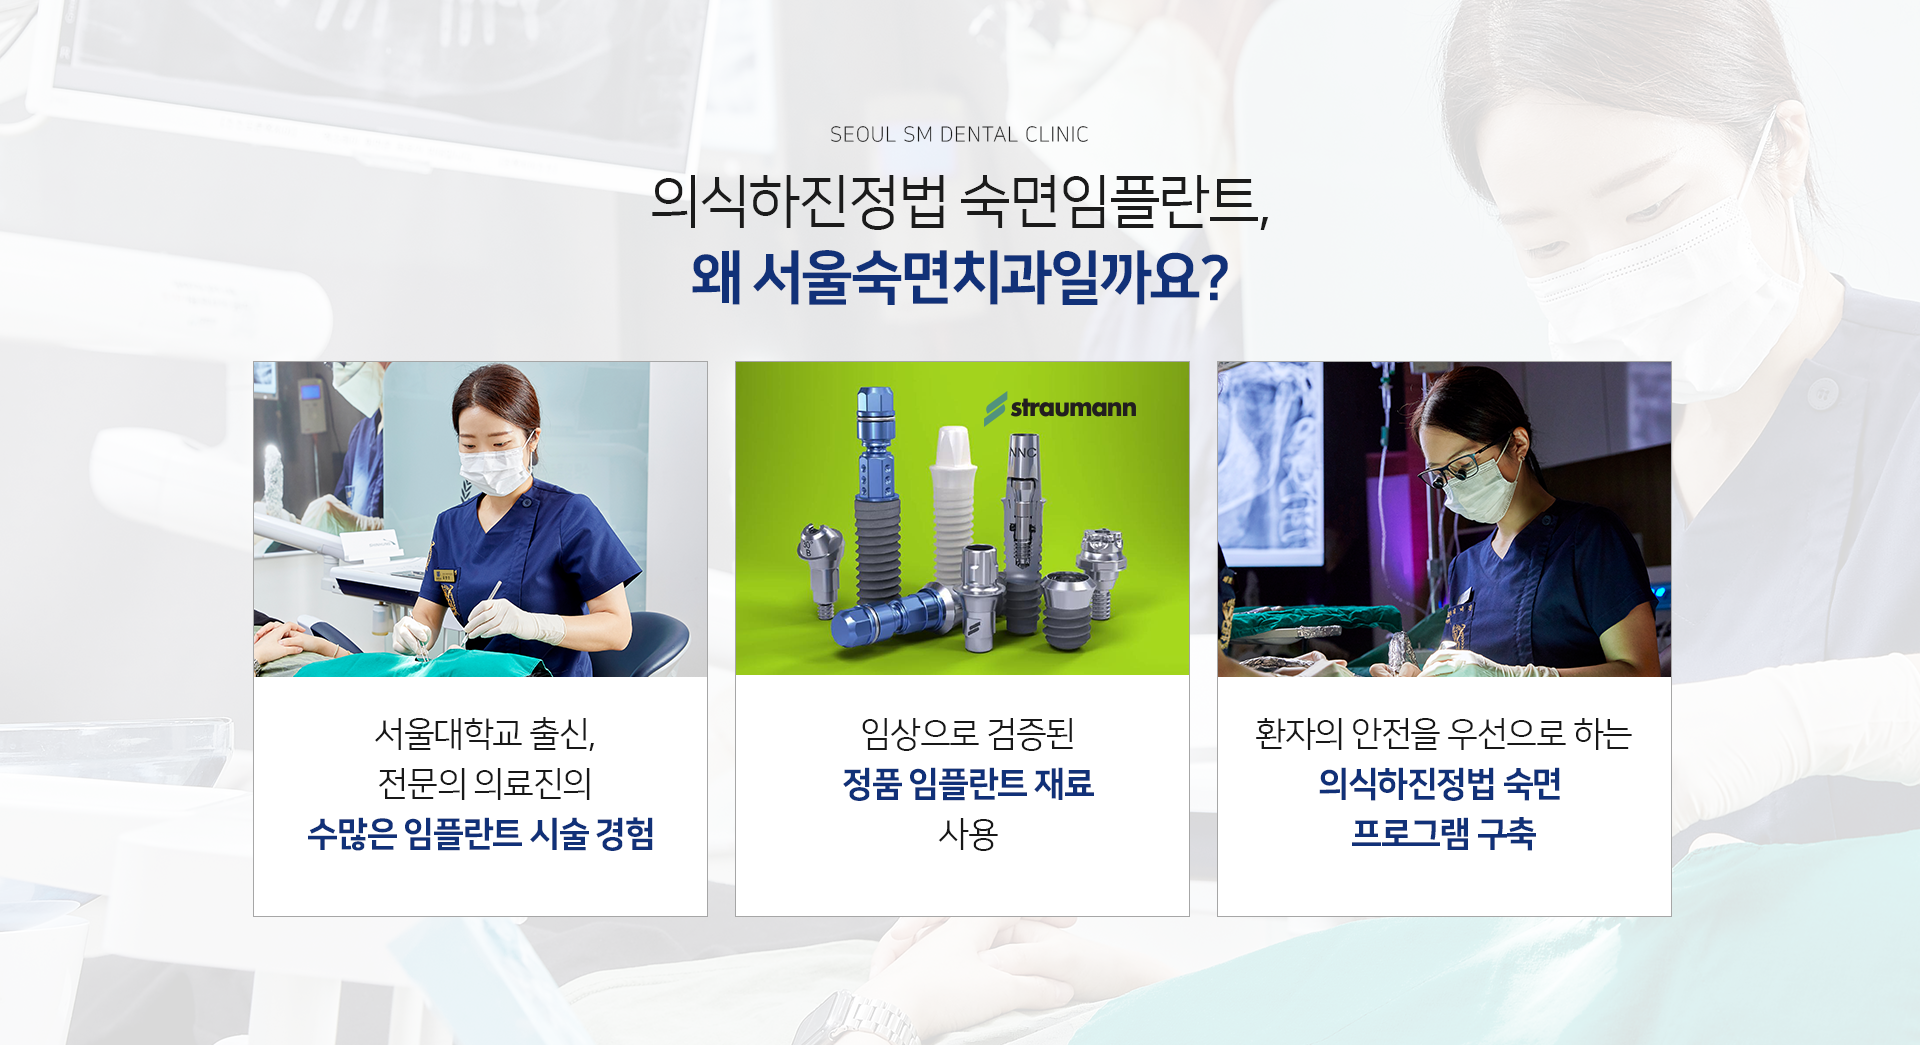 서울대학교-출신-전문의-의료진의-수많은-임플란트-수술-경험-임상으로-검증된-정품-임플란트-재료-사용